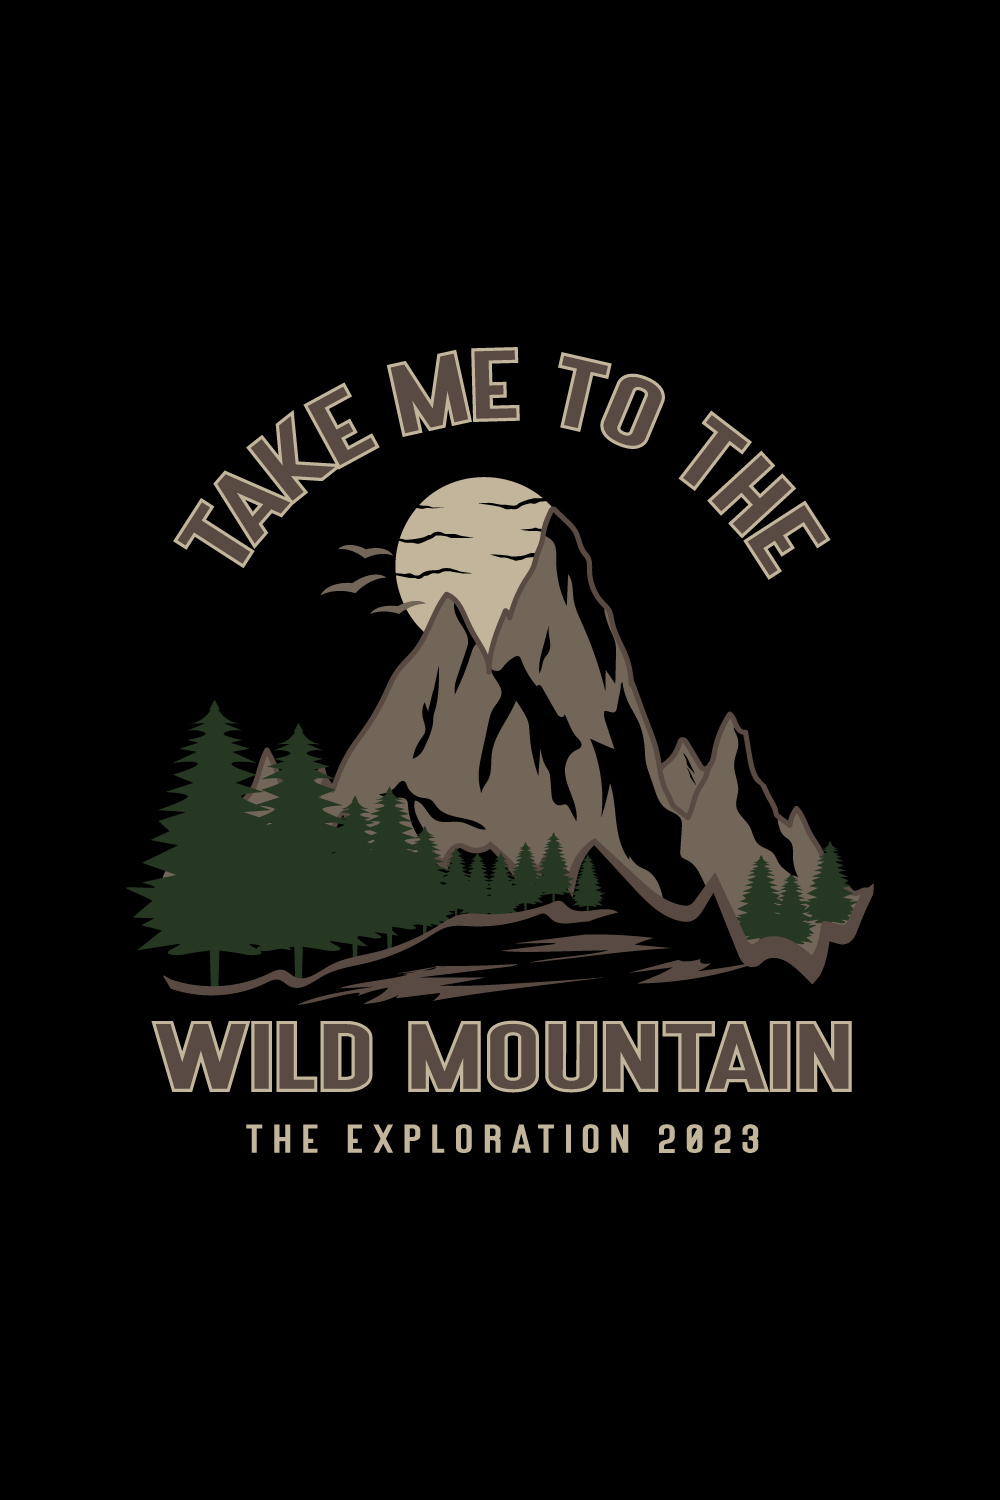 mountain t-shirt design - Take me to the wild mountain pinterest preview image.